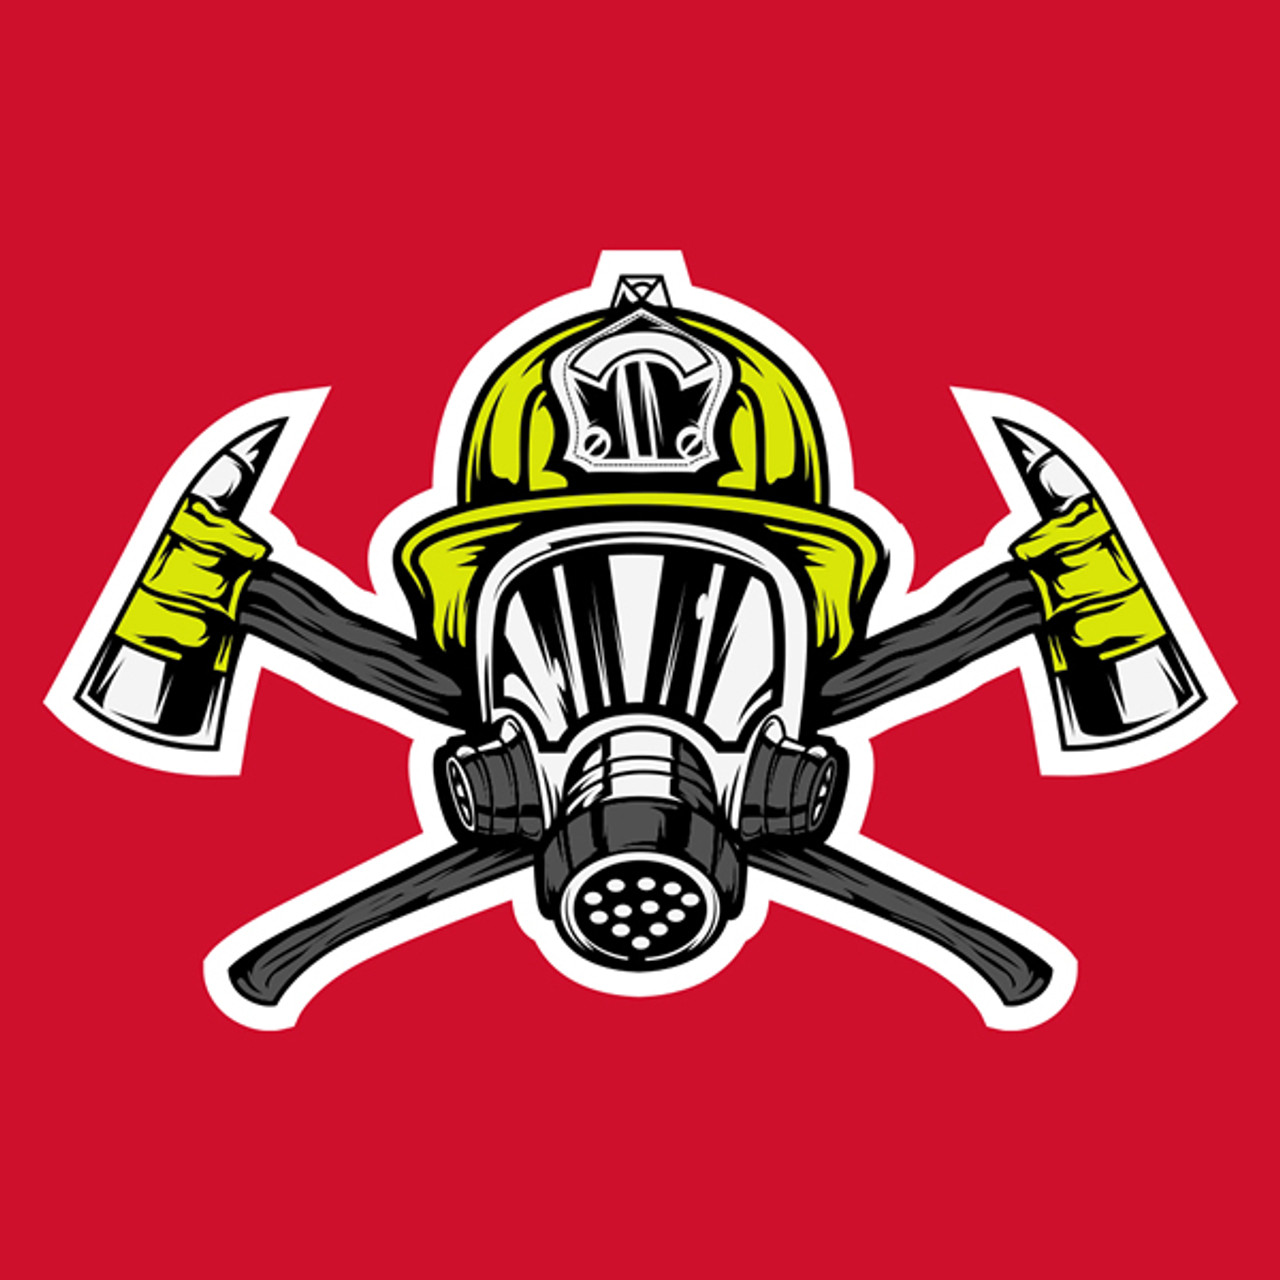 Jersey Ninja - Firefighter Turnout Gear Pop Culture Hockey Jersey